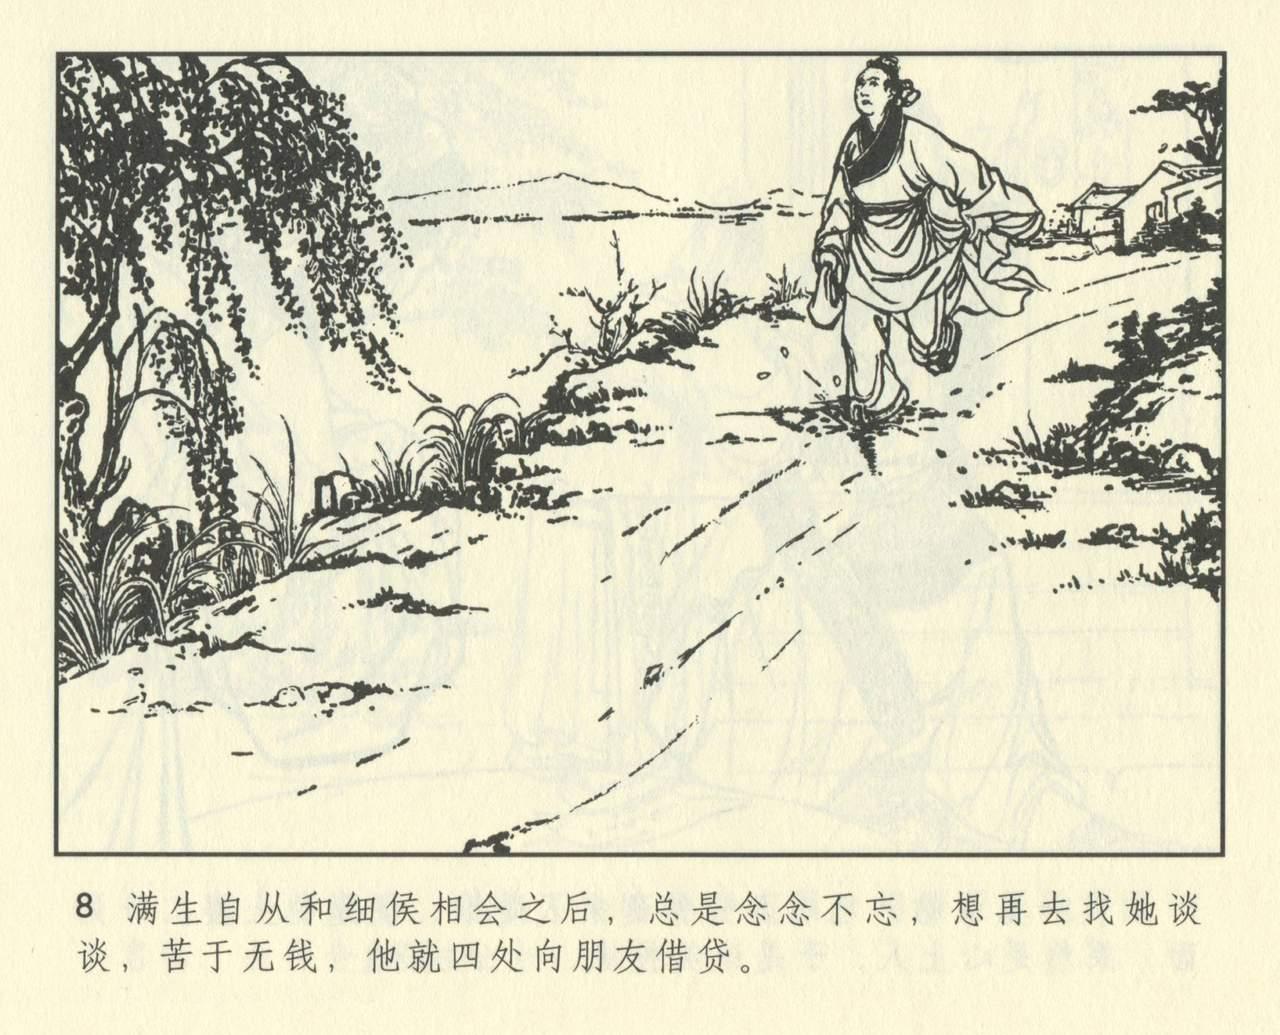 聊斋志异 张玮等绘 天津人民美术出版社 卷二十一 ~ 三十 419